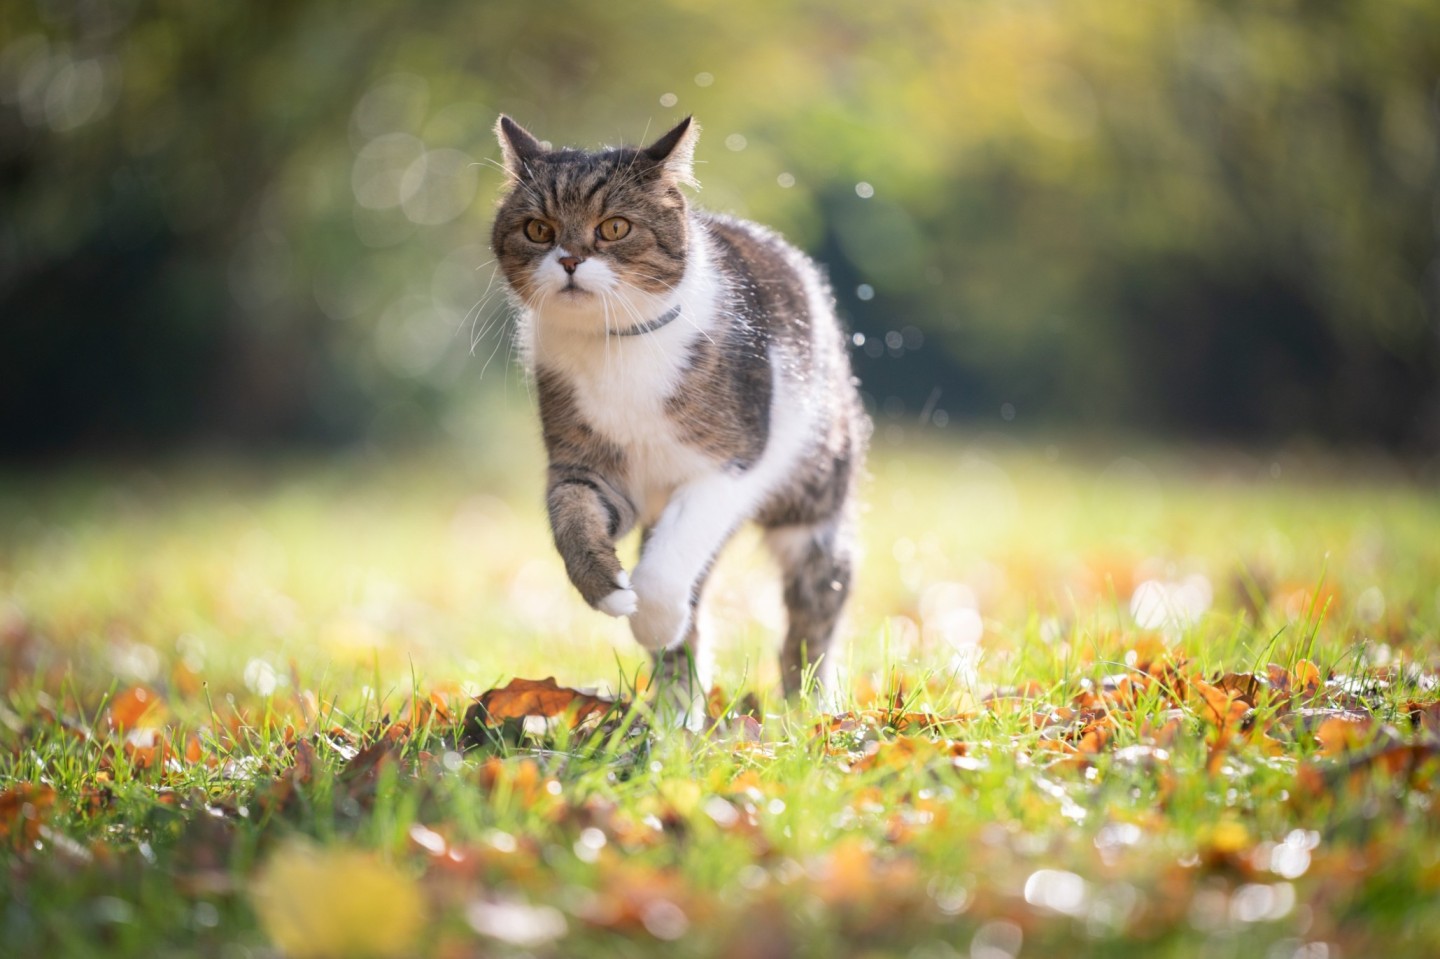 An outdoor cat running through a garden